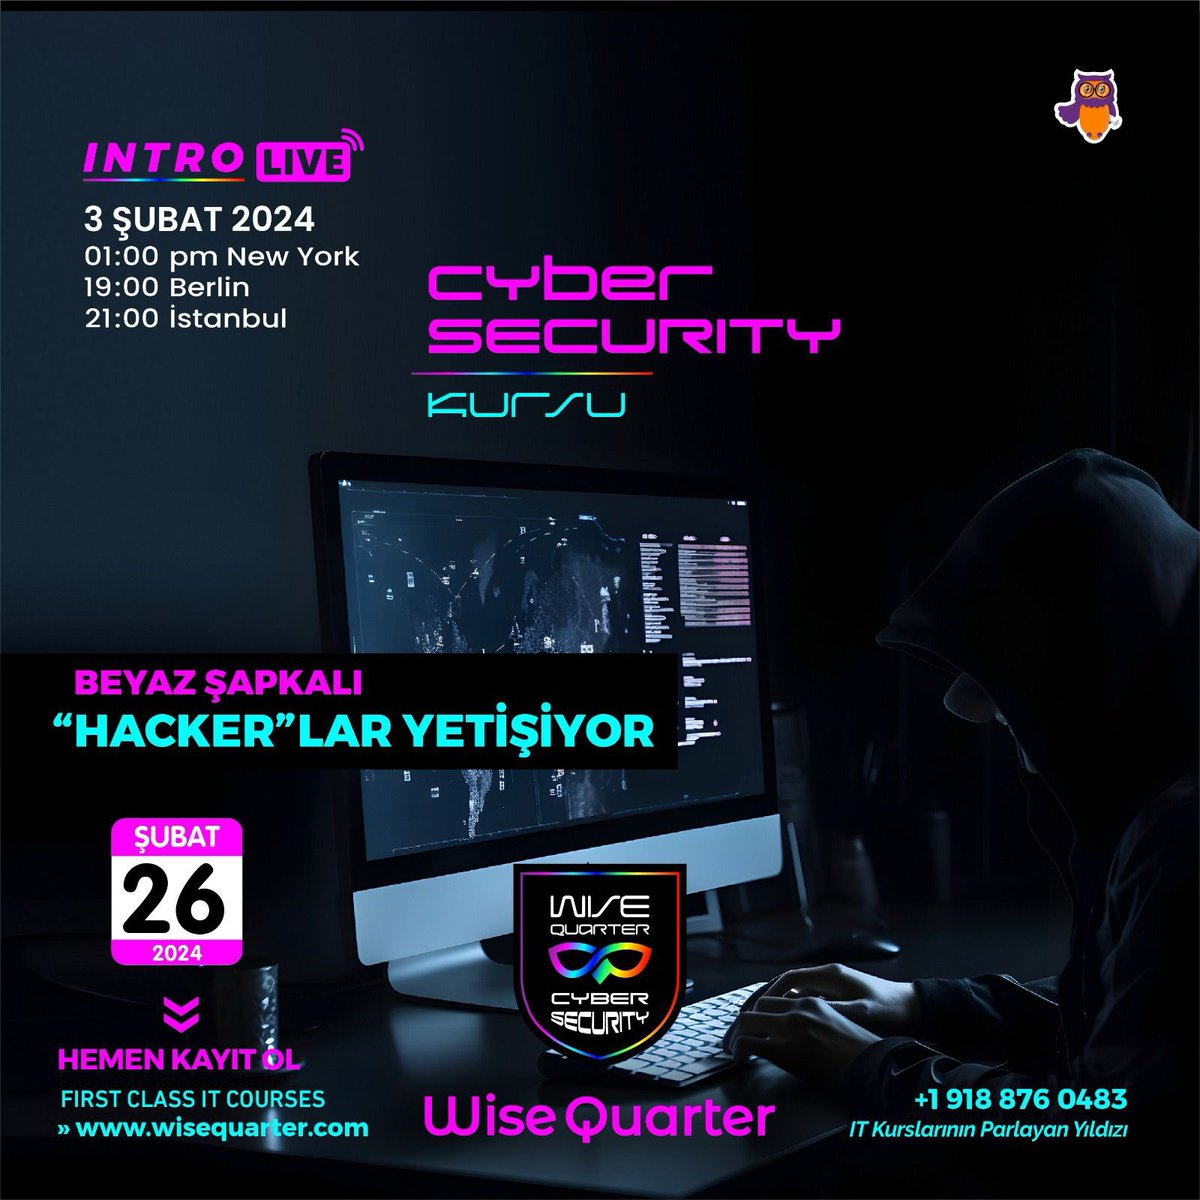 📣 Wise Quarter Cyber Security (Siber Güvenlik) Kursu 26 Şubat 2024 tarihinde Ücretsiz Siber Güvenlik ile başlıyor!

❓Peki Siber Güvenlik Nedir ve Neden Önemlidir.. ++

#sibergüvenlik #cybersecurity #sibergüvenlikeğitimi #cybersecuritytraining #bootcamp